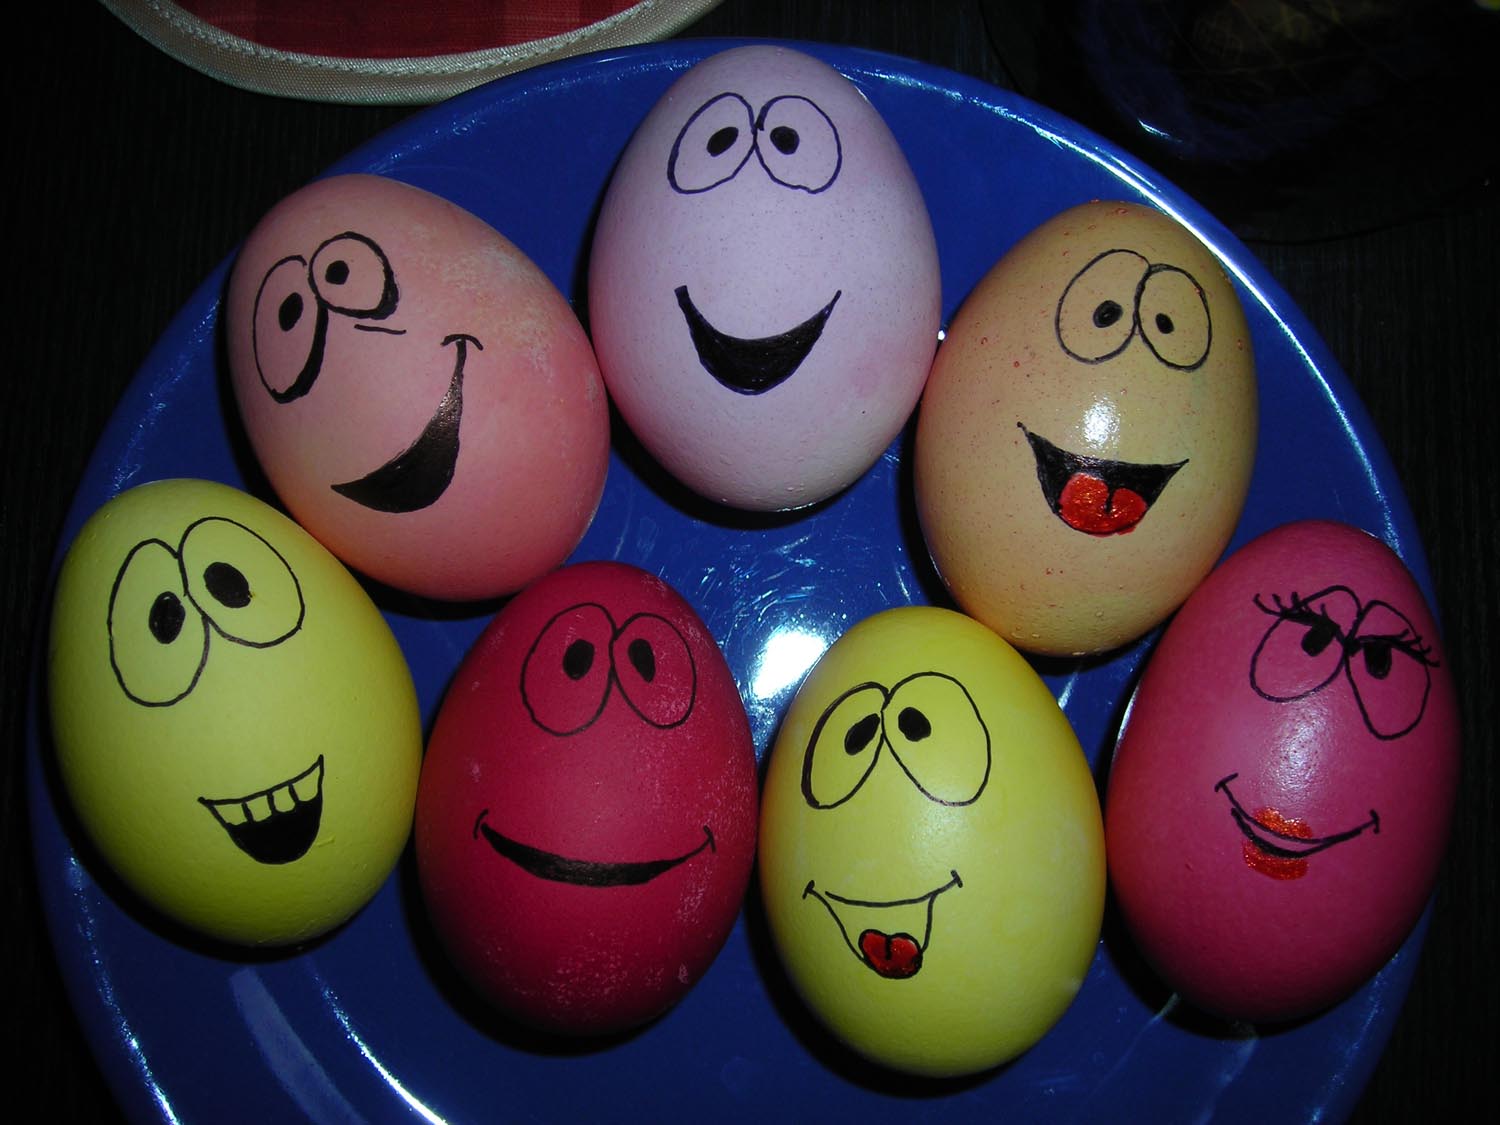 Как раскрасить яйца на пасху. Необычные яйца на Пасху. Необычно раскрасить яйца. Яйца на Пасху оригинальные идеи. Разрисованные яйца на Пасху.